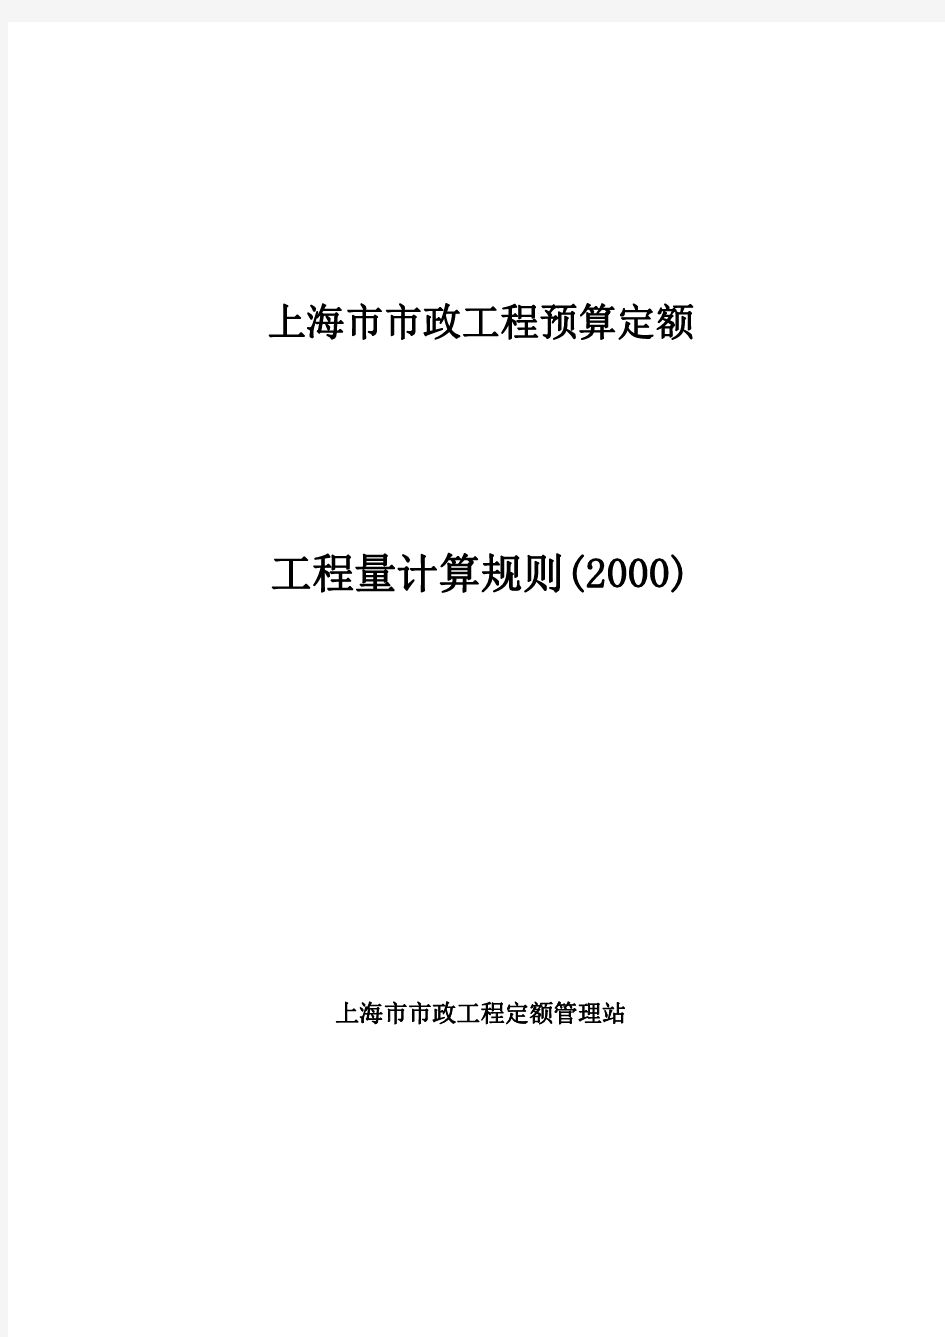 上海市市政工程预算定额(2000)